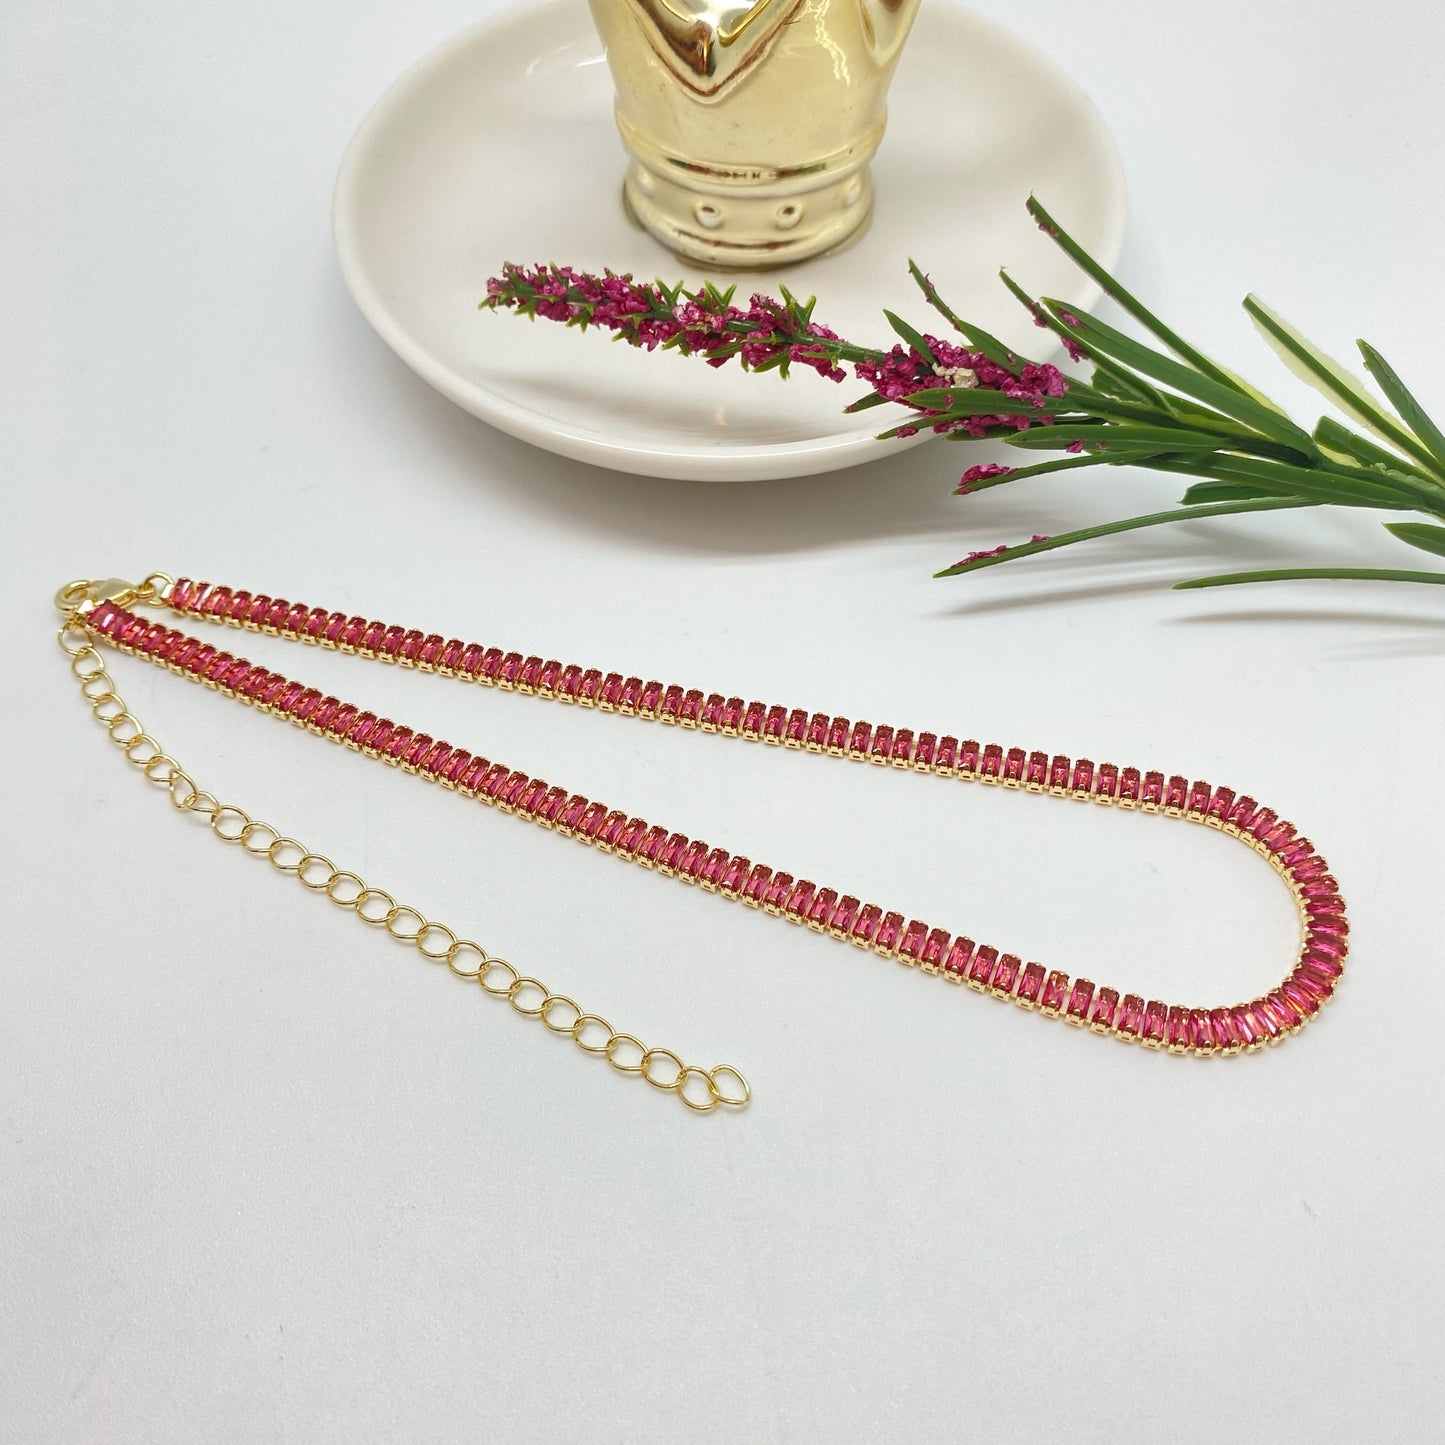 CO198 Collar Chocker Cristales Rosa Light Baguette Largo 30 cm más Extensor de 10 cm Ancho 4.5 mm Espesor 2.8 mm Collar Terminado Baño Oro Cadenas Bañadas hecho de Bronce Bañado en Oro 18K Joyas Bañadas en Oro